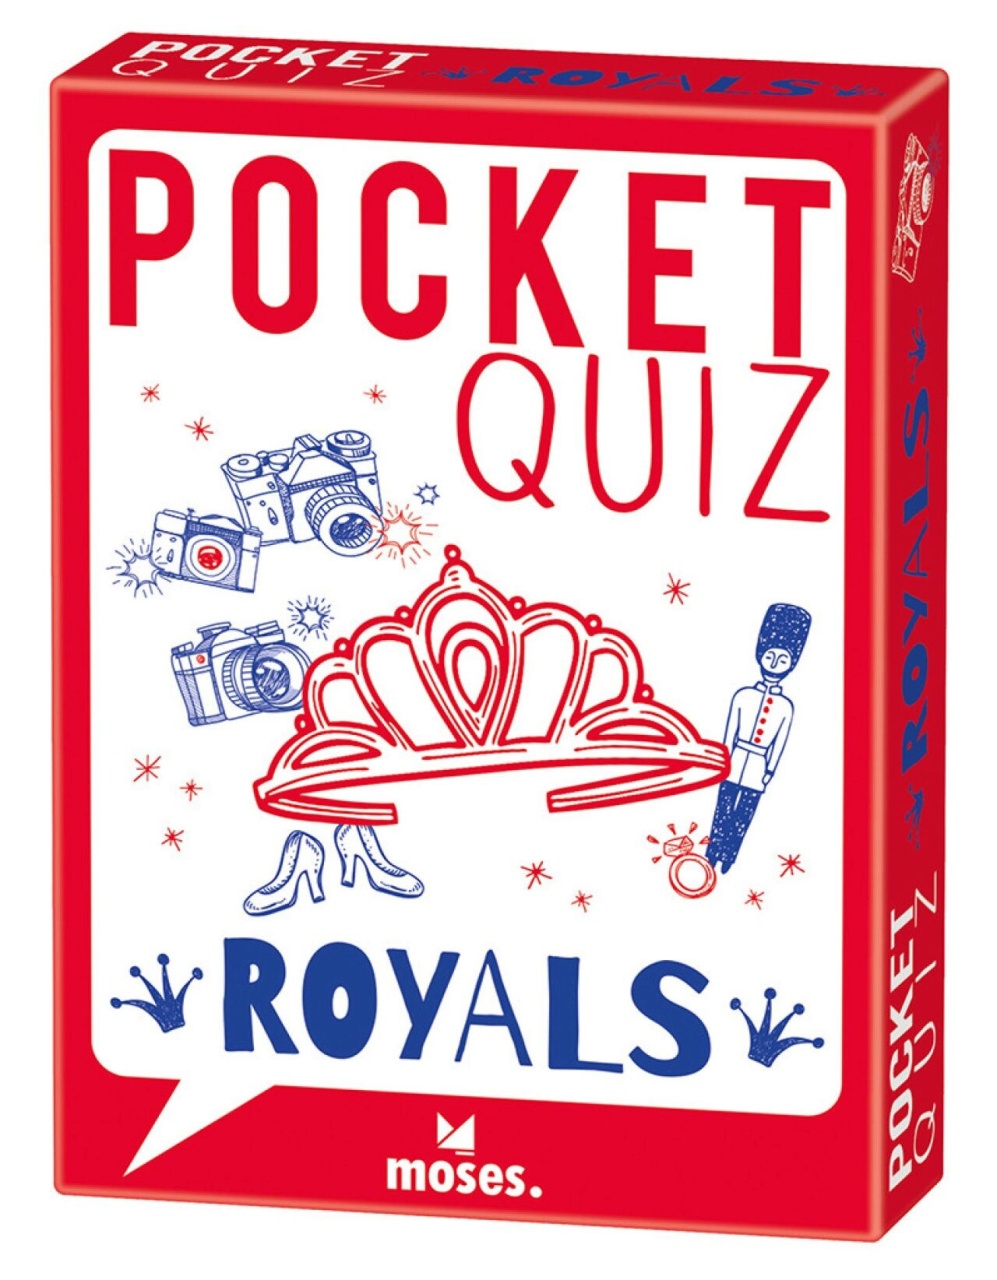 Pocket Quiz Royals Moses